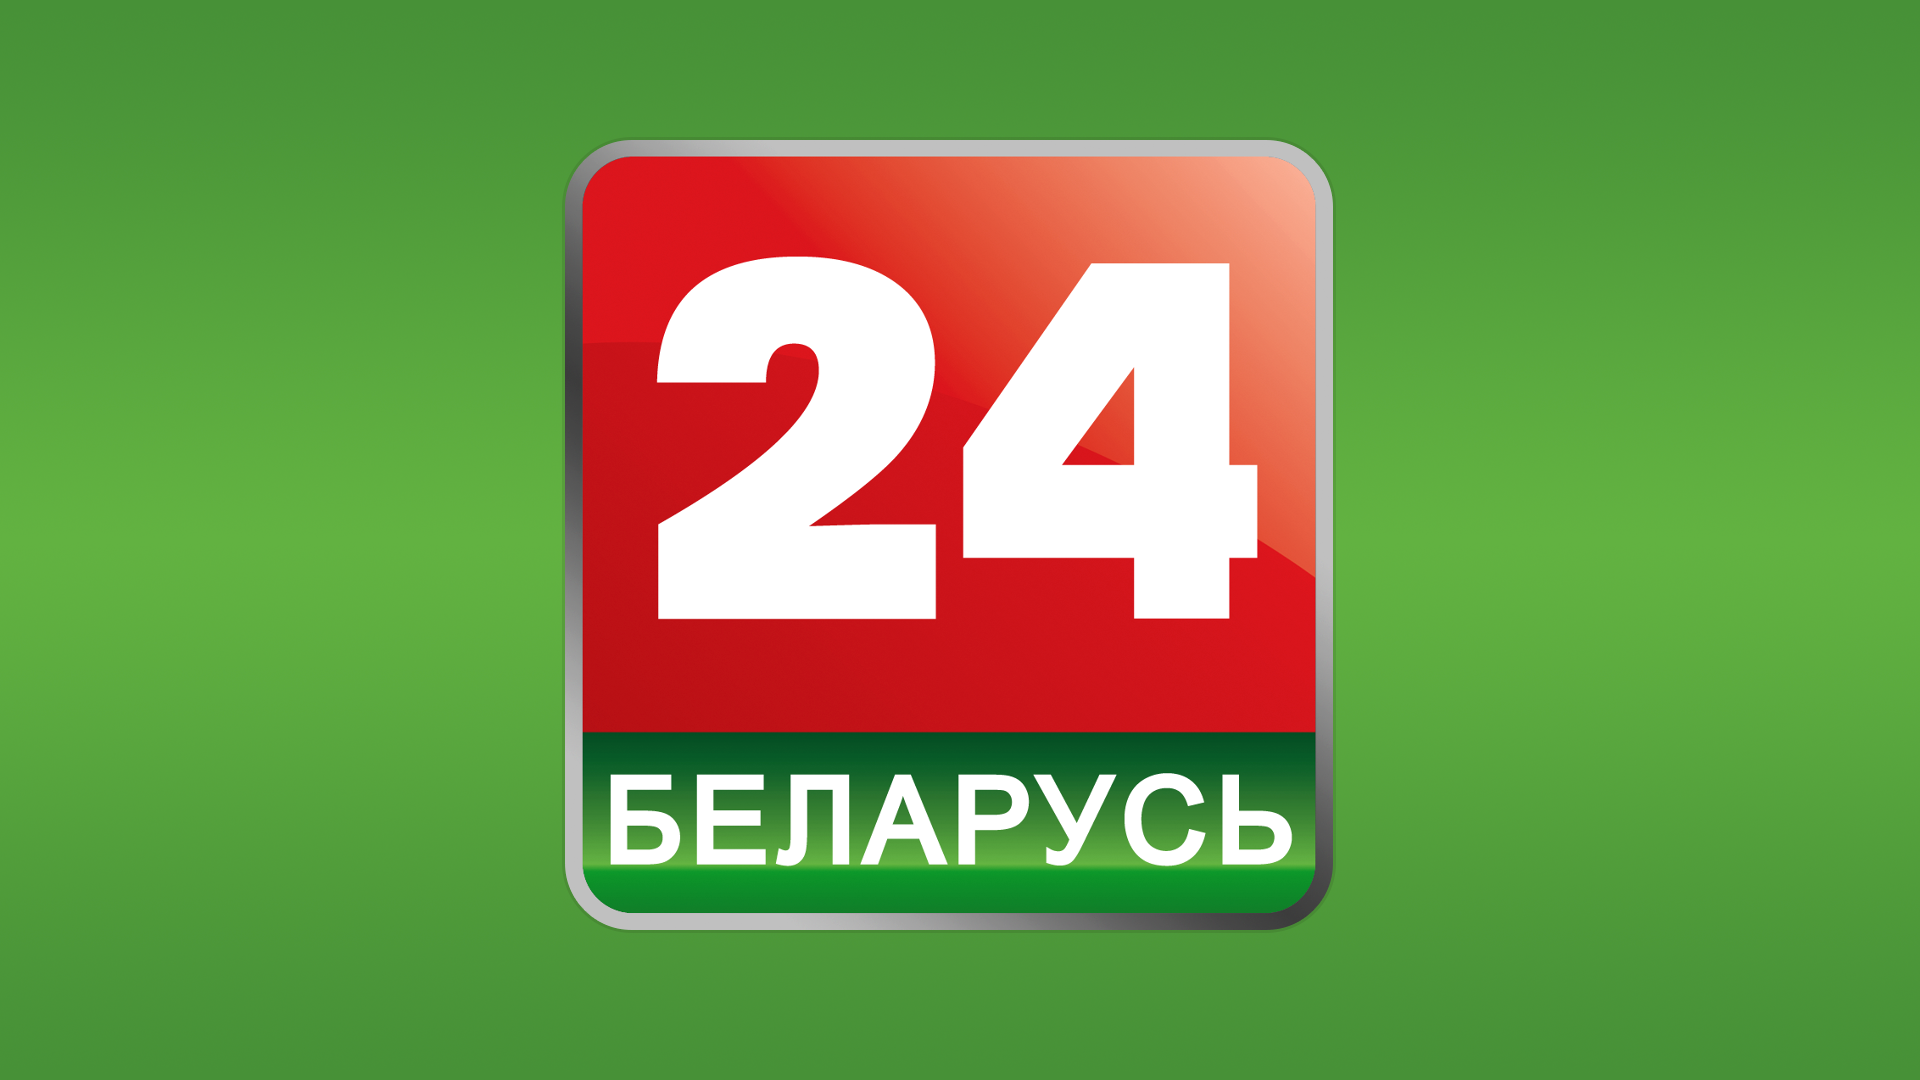 Каналы телевидения беларусь. Беларусь 24. Телеканал Беларусь 24. Беларусь 24 логотип. Беларусь 1 логотип.